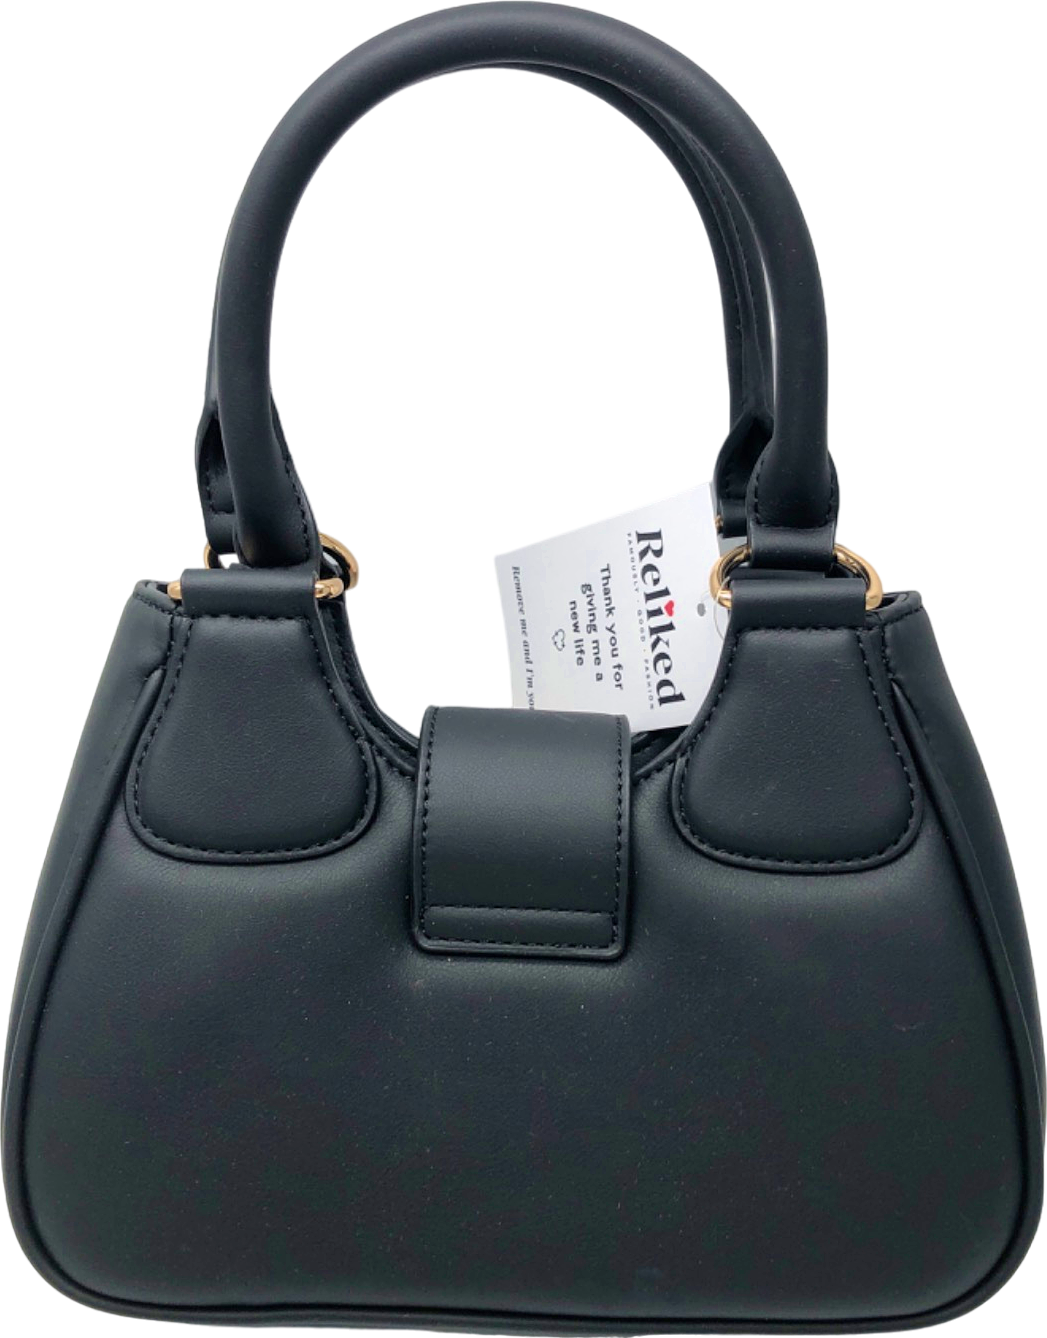 Forever New Black Mini Satchel Bag